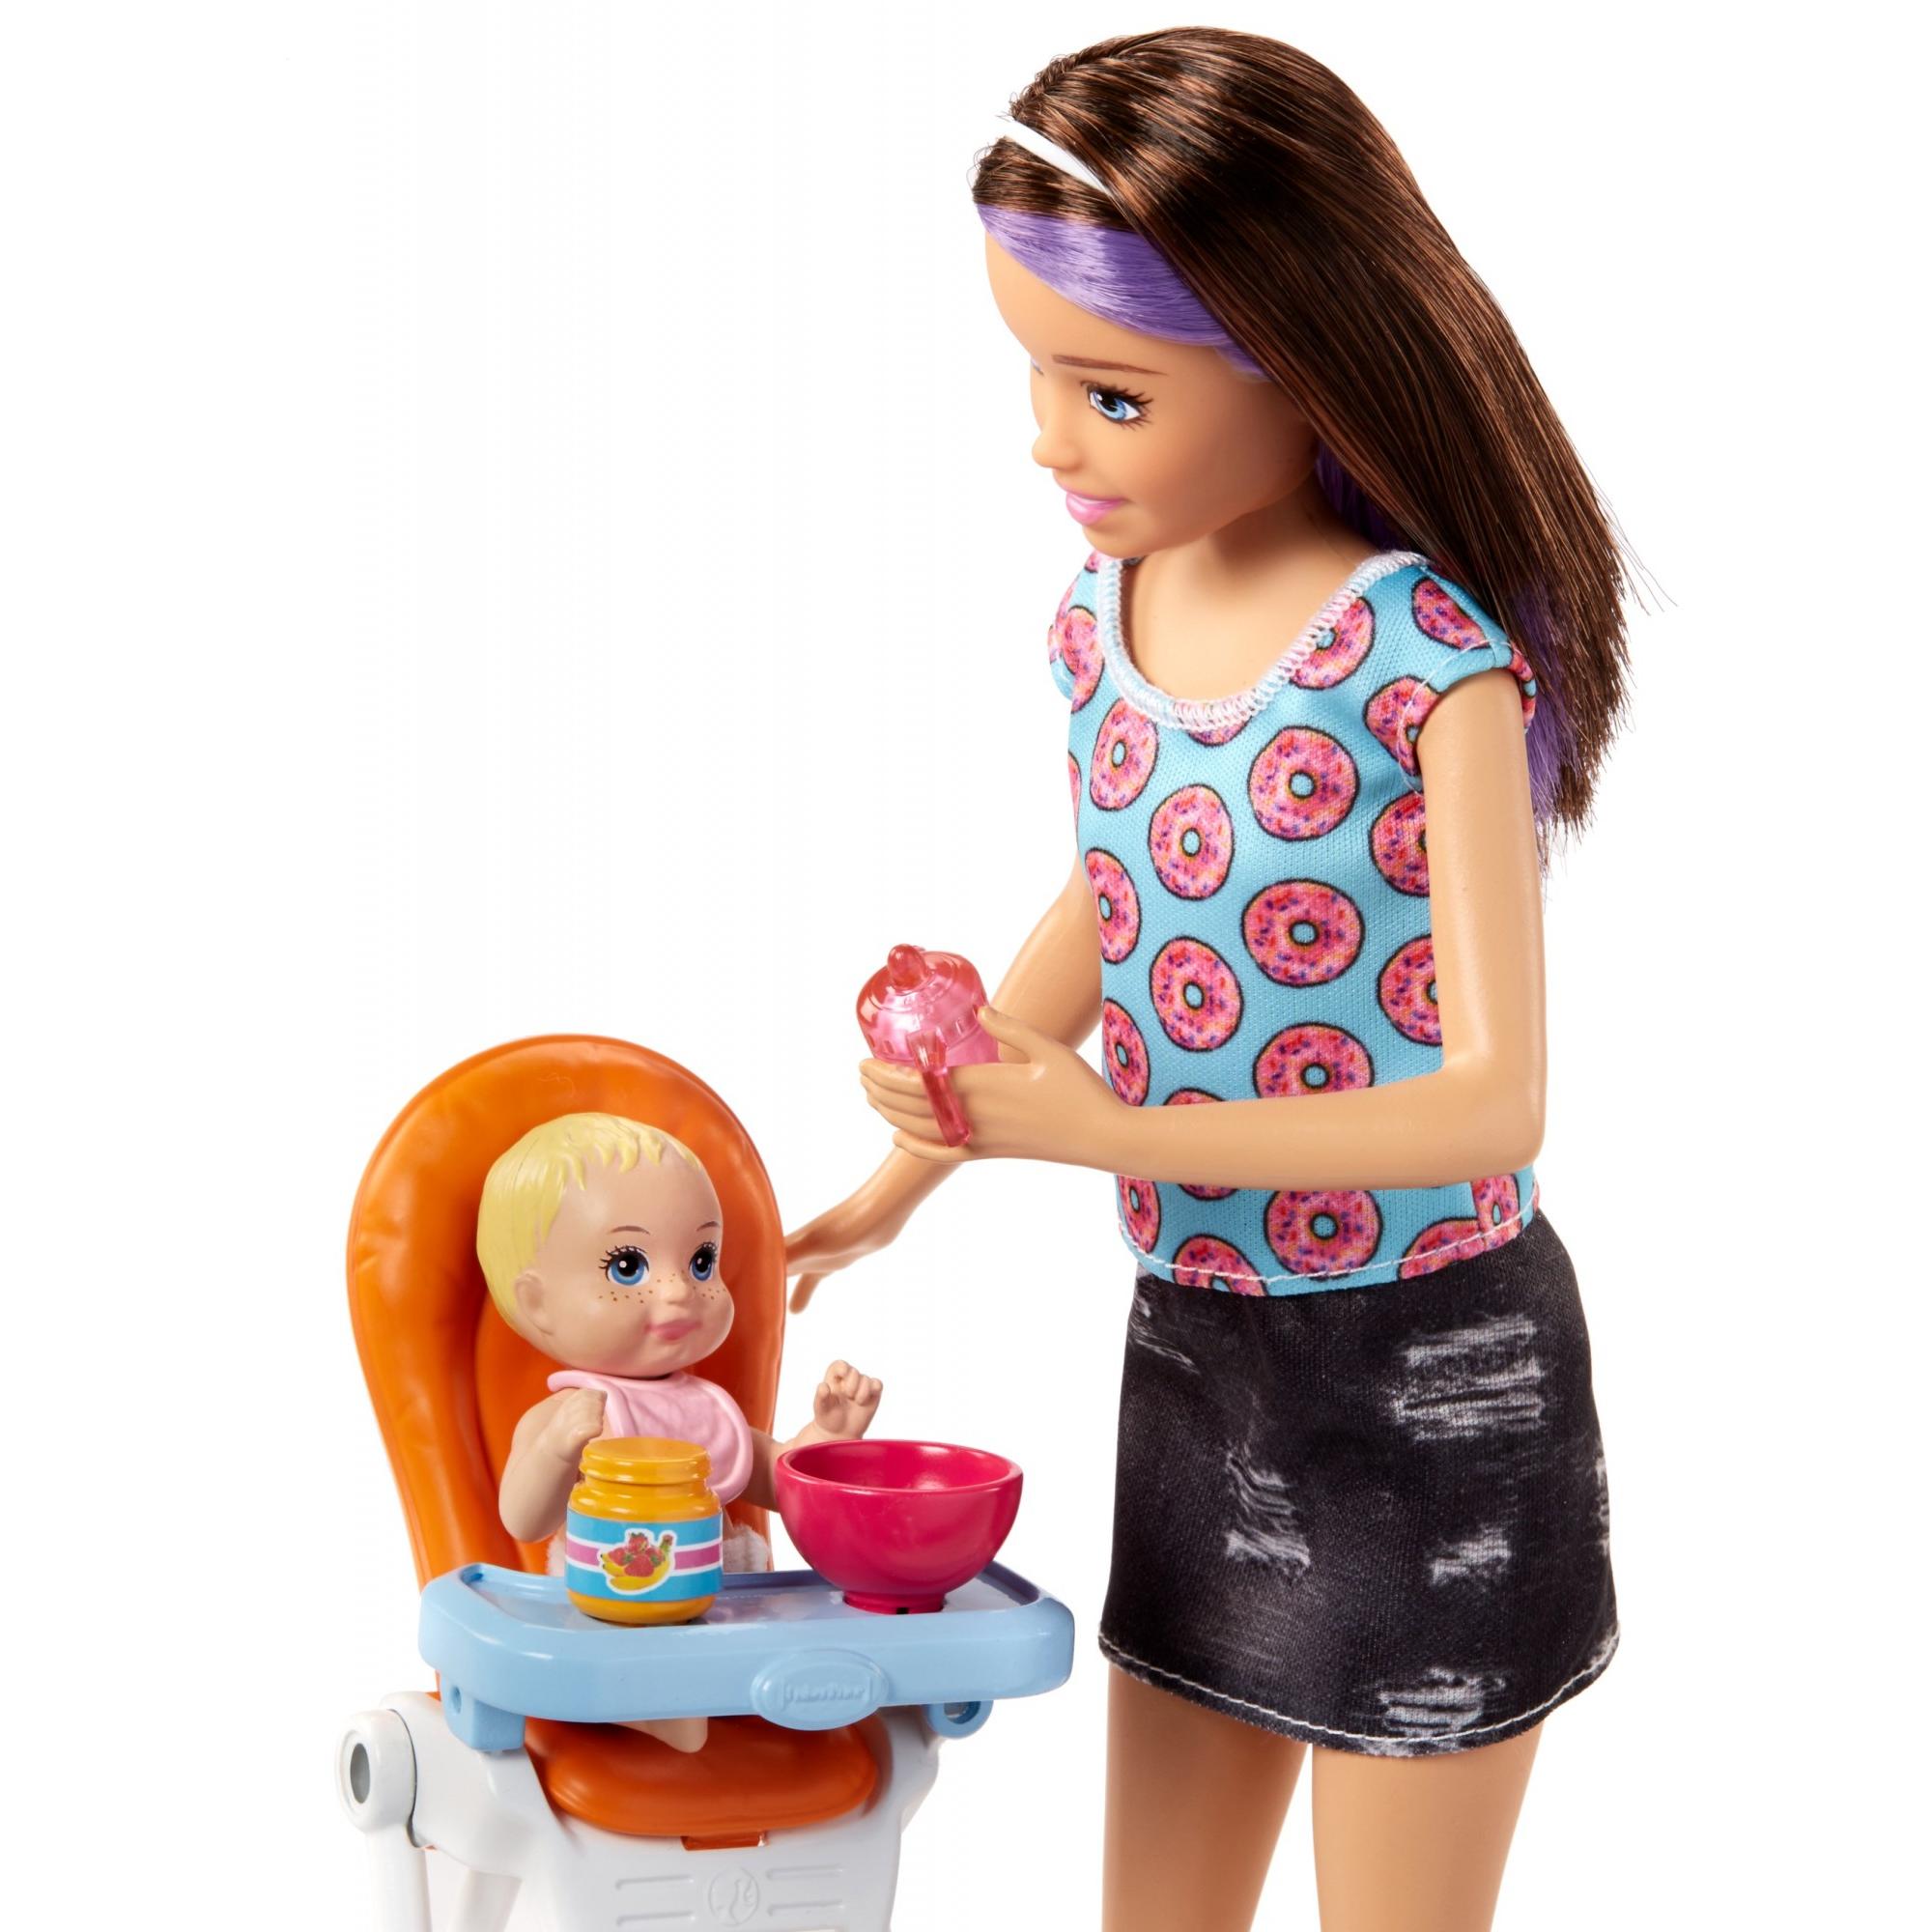 Barbie Skipper Babysitters Inc. Doll & Baby Feeding Doll Playset ...